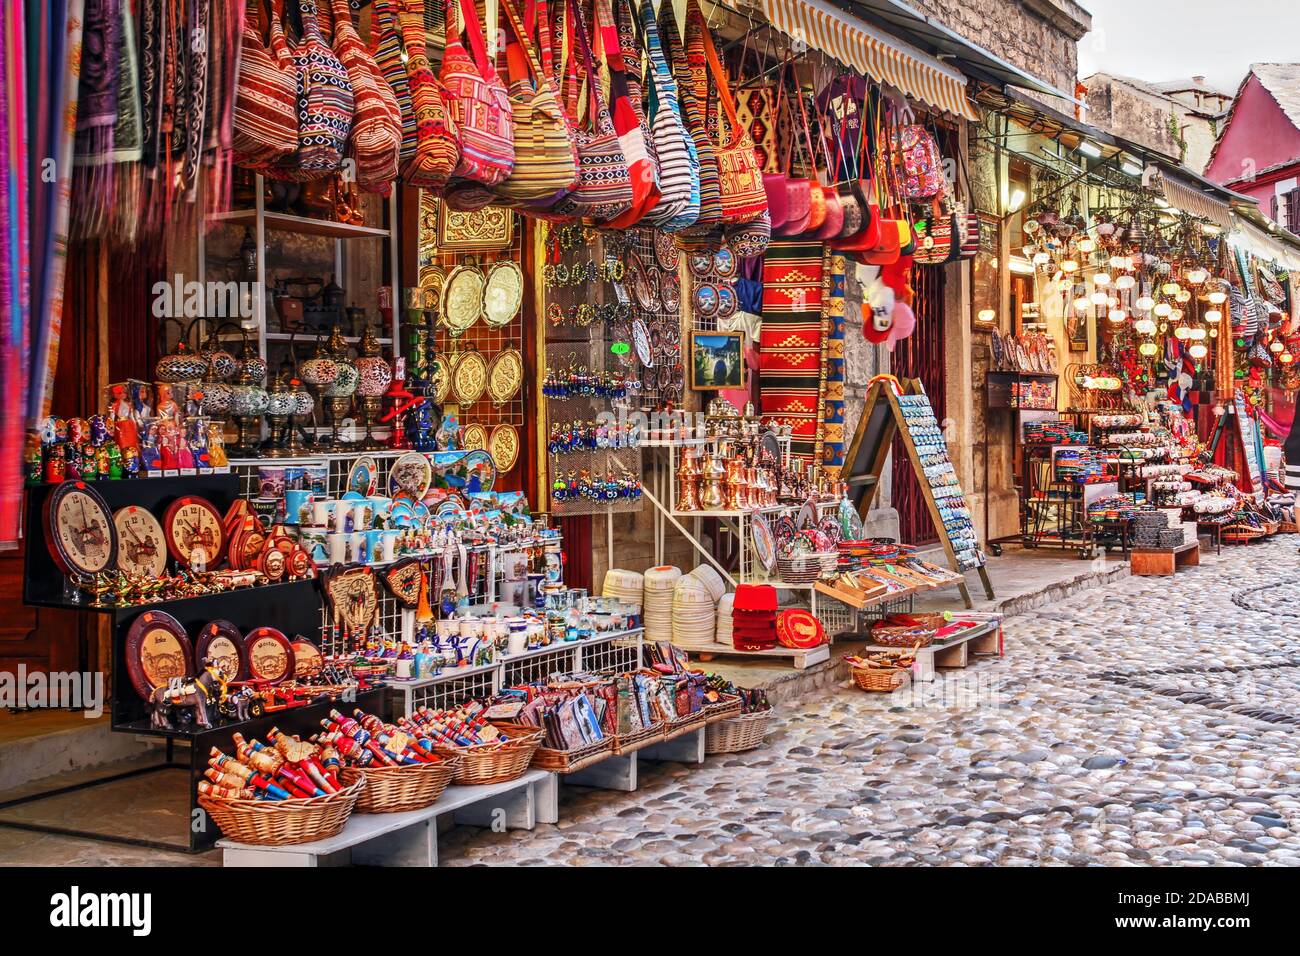 Reiche Auswahl an traditionellen Handwerken und Souvenirs entlang der gepflasterten Straßen von Mostar, Bosnien-Herzegowina Stockfoto